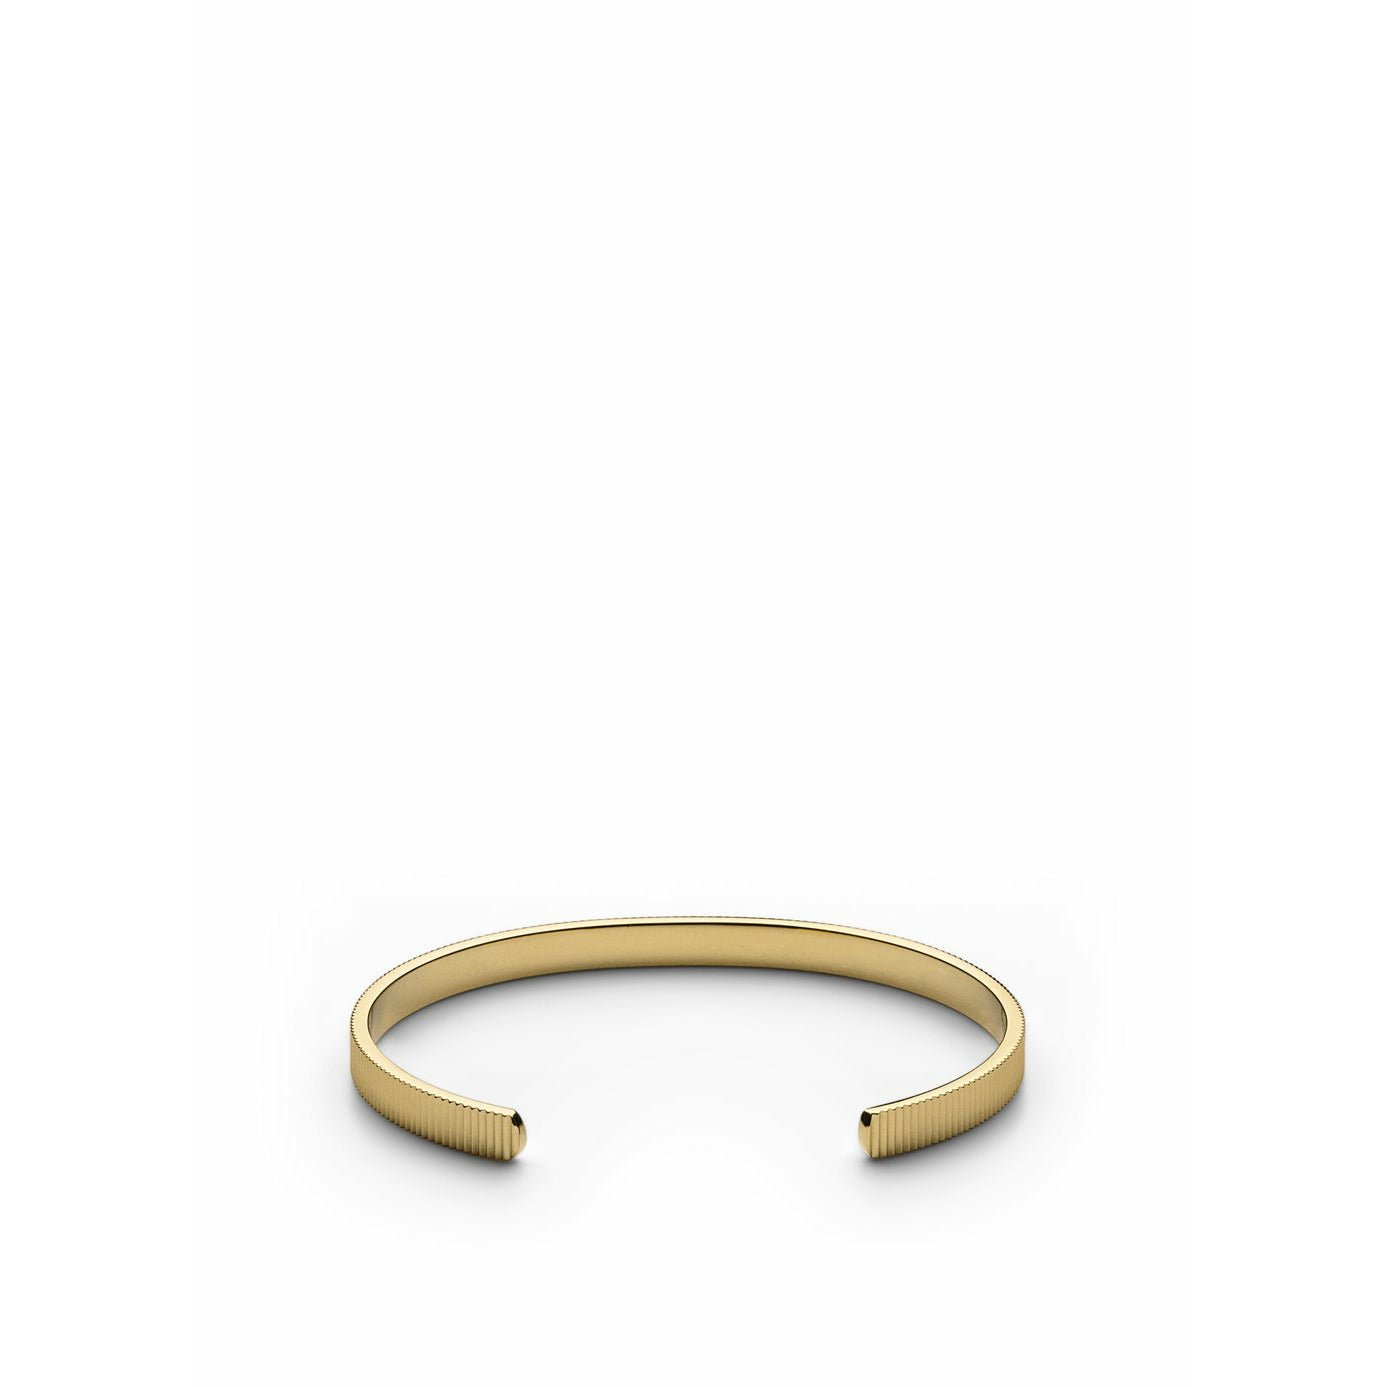 Skultuna pulsera delgada delgada de oro mediano chapado, Ø16,5 cm